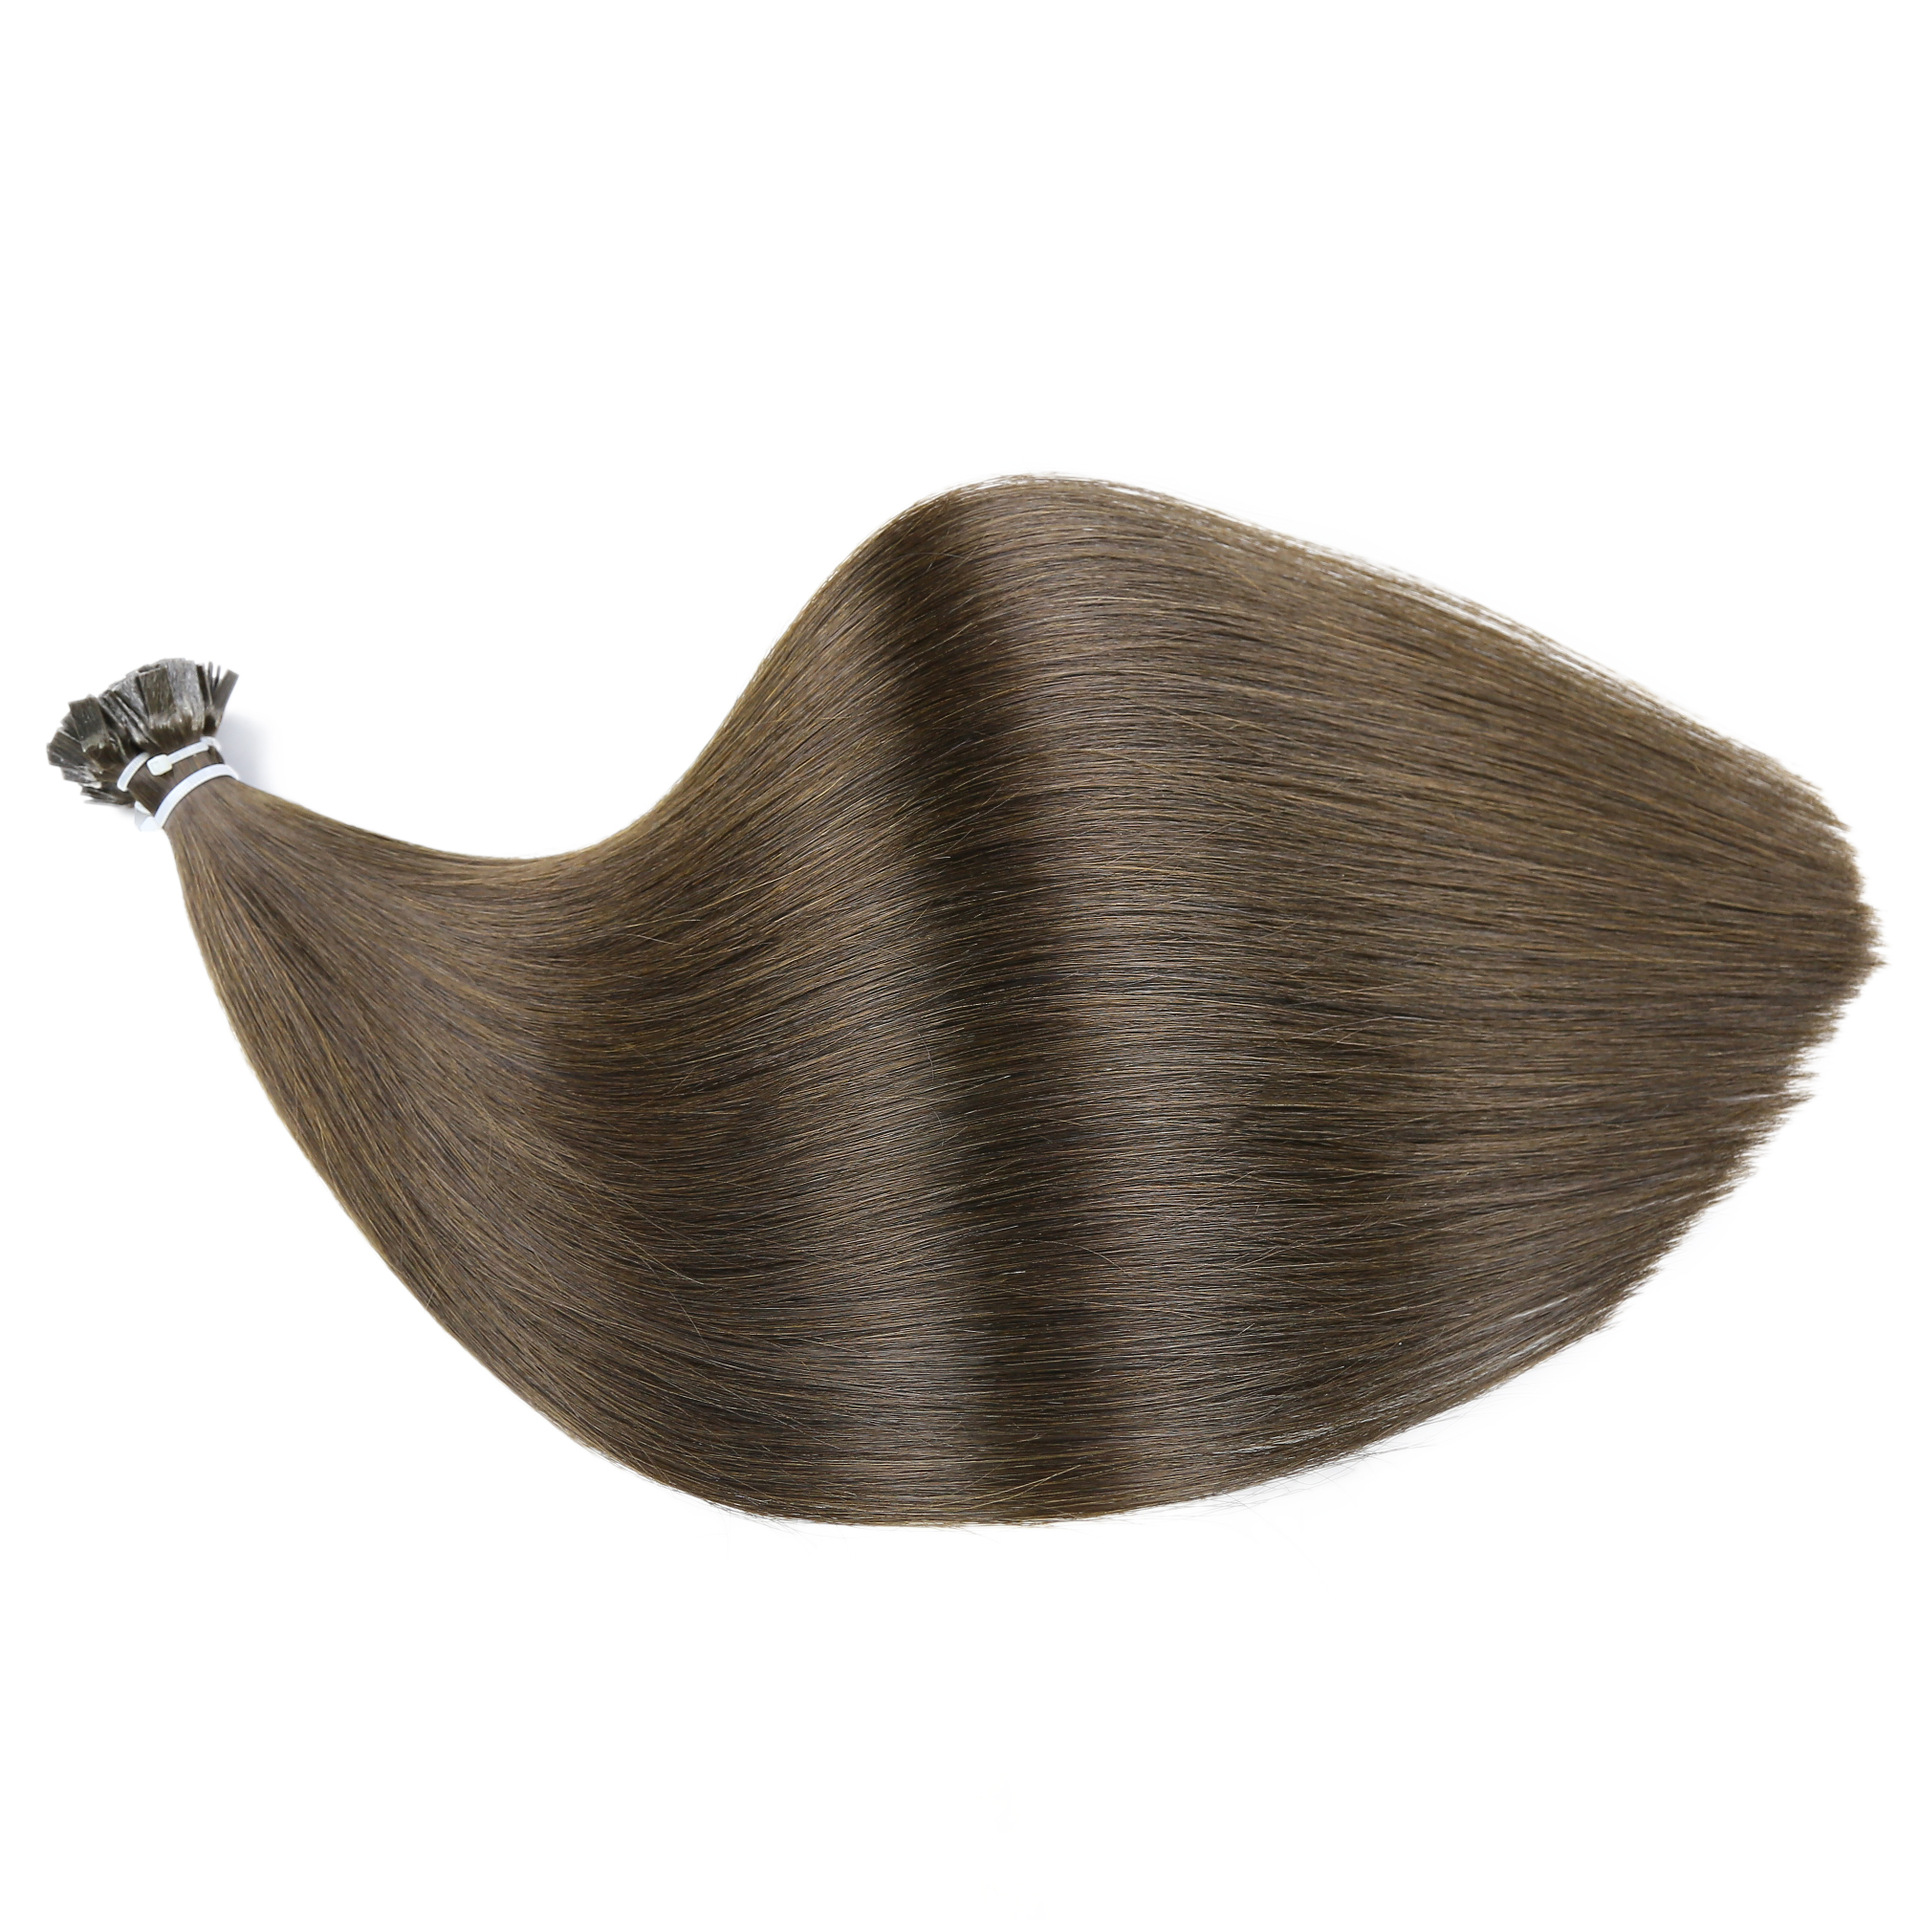 Flat Hair Hair# Dark Brown Hair with Good Quality Factory Real Human Hair Glue Head Hair Extensions Keratinhair